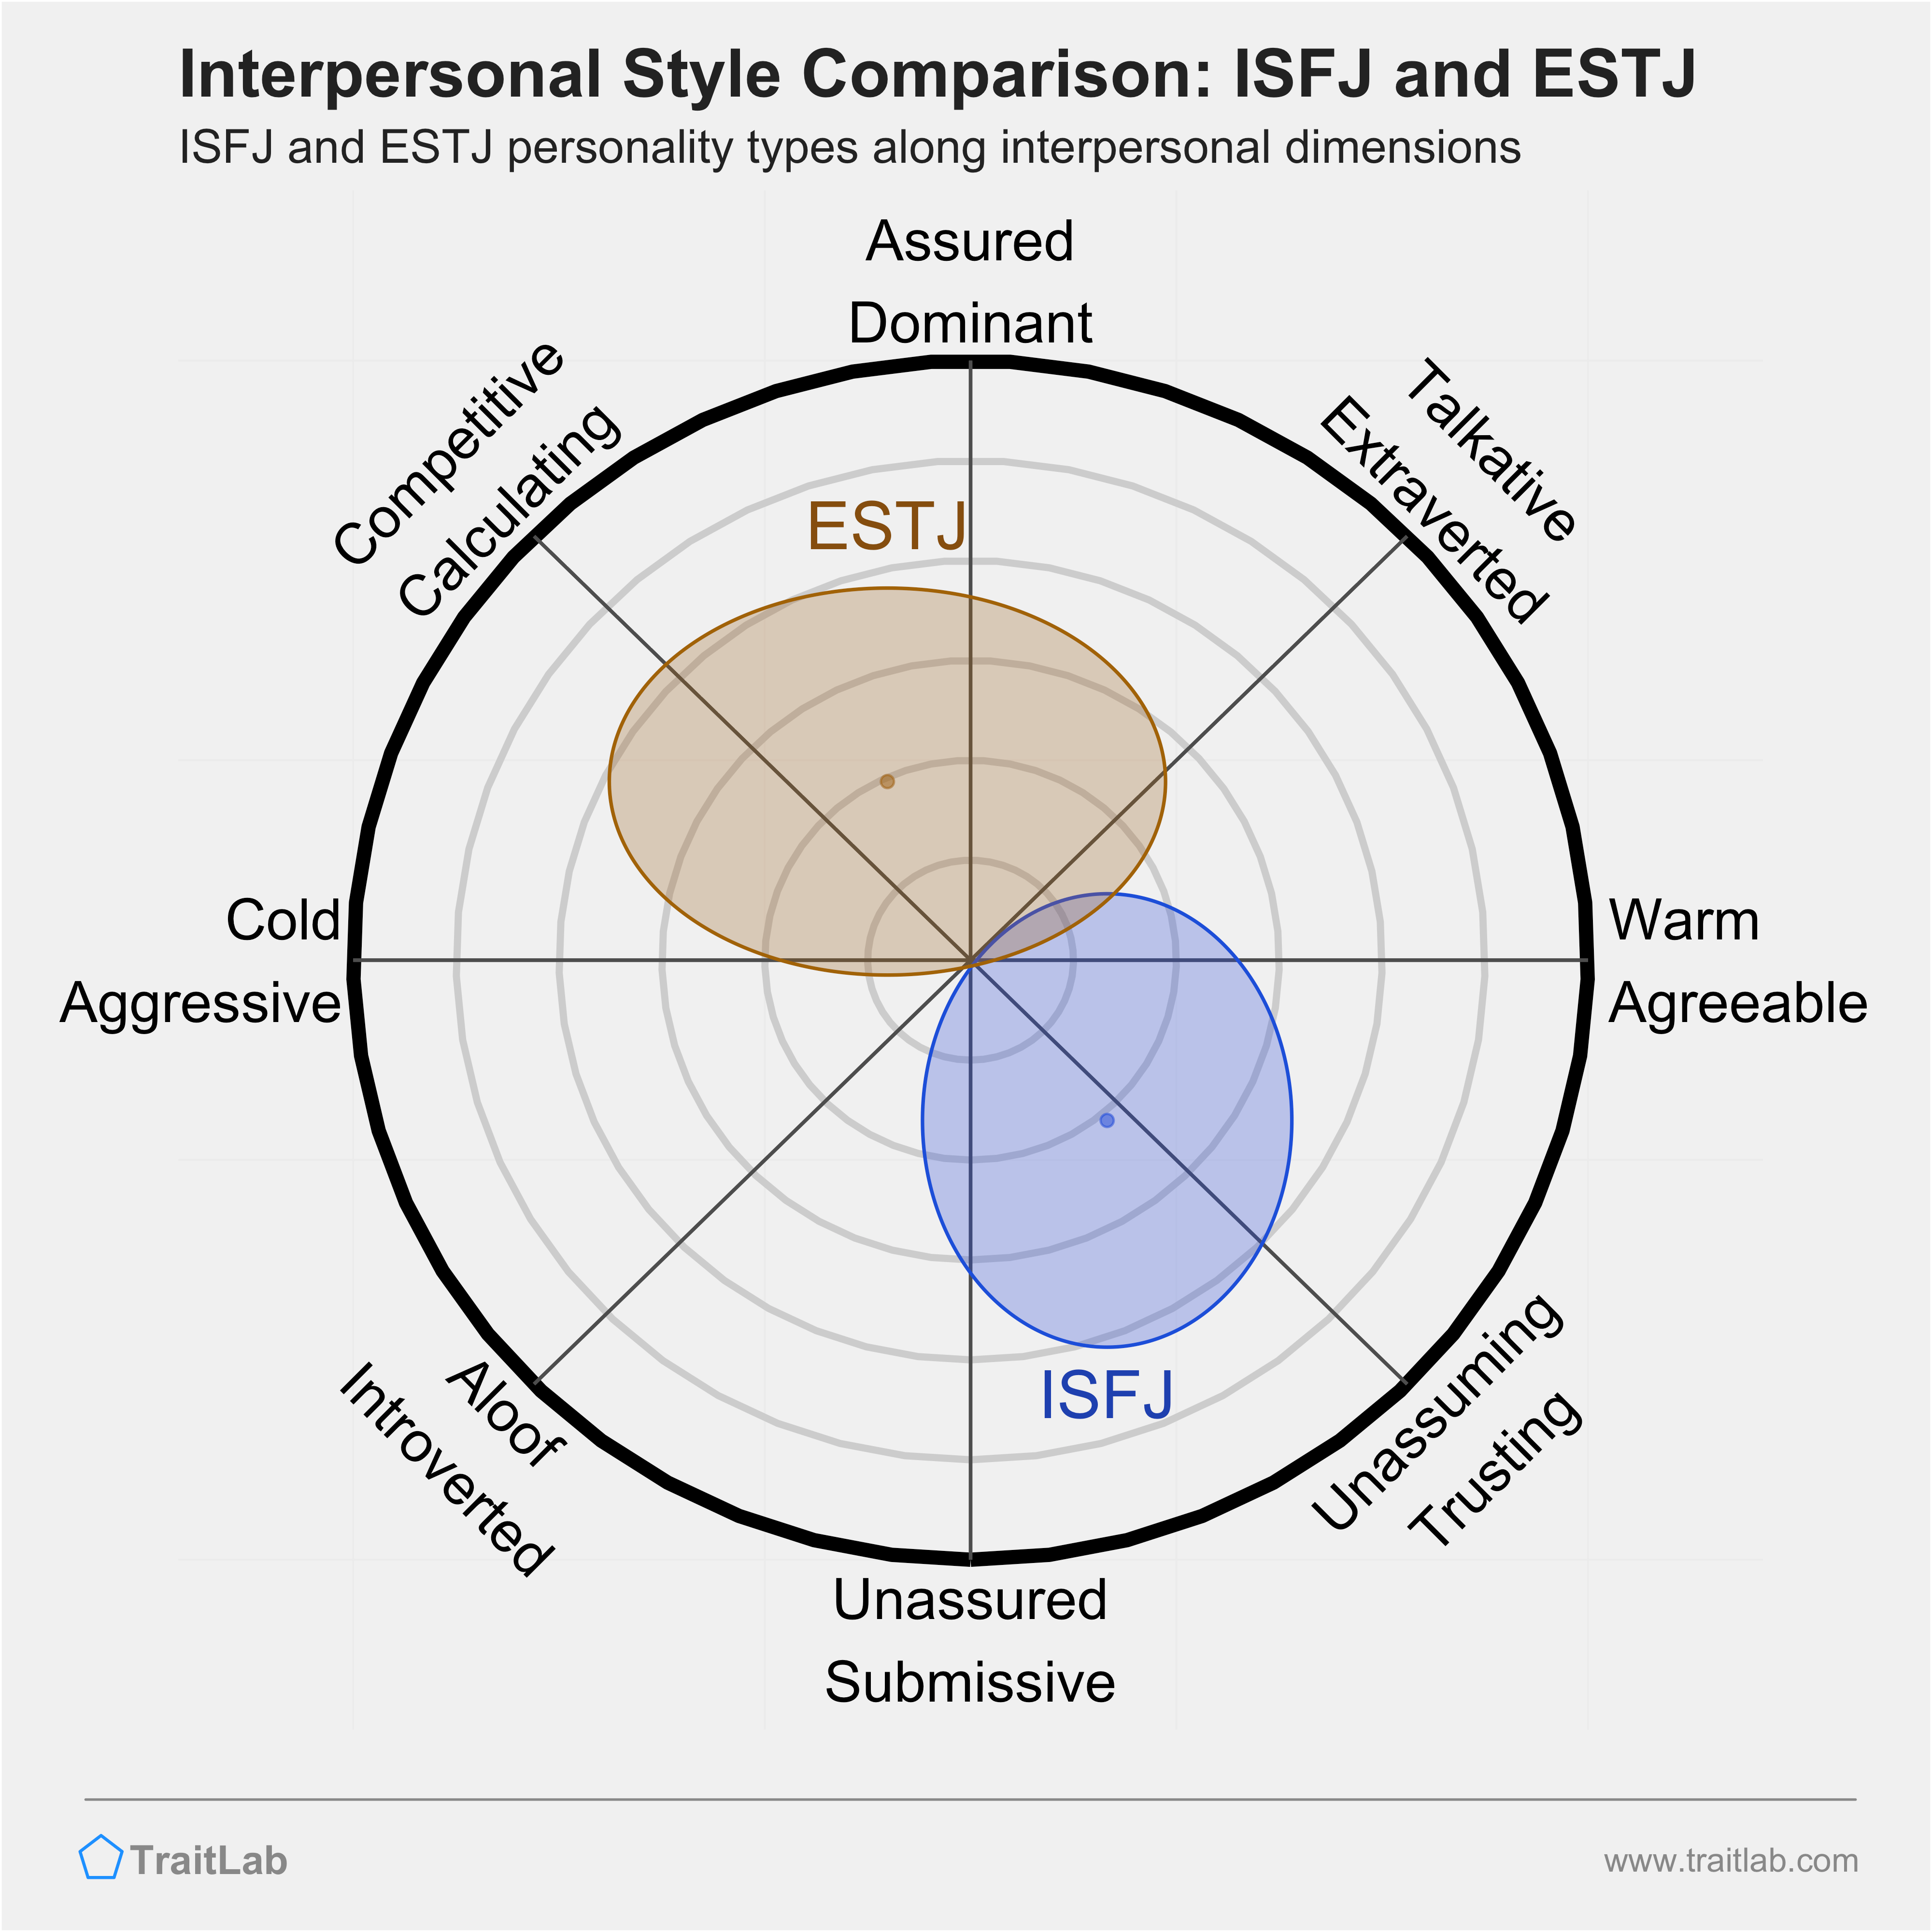 ISFJ and ESTJ comparison across interpersonal dimensions